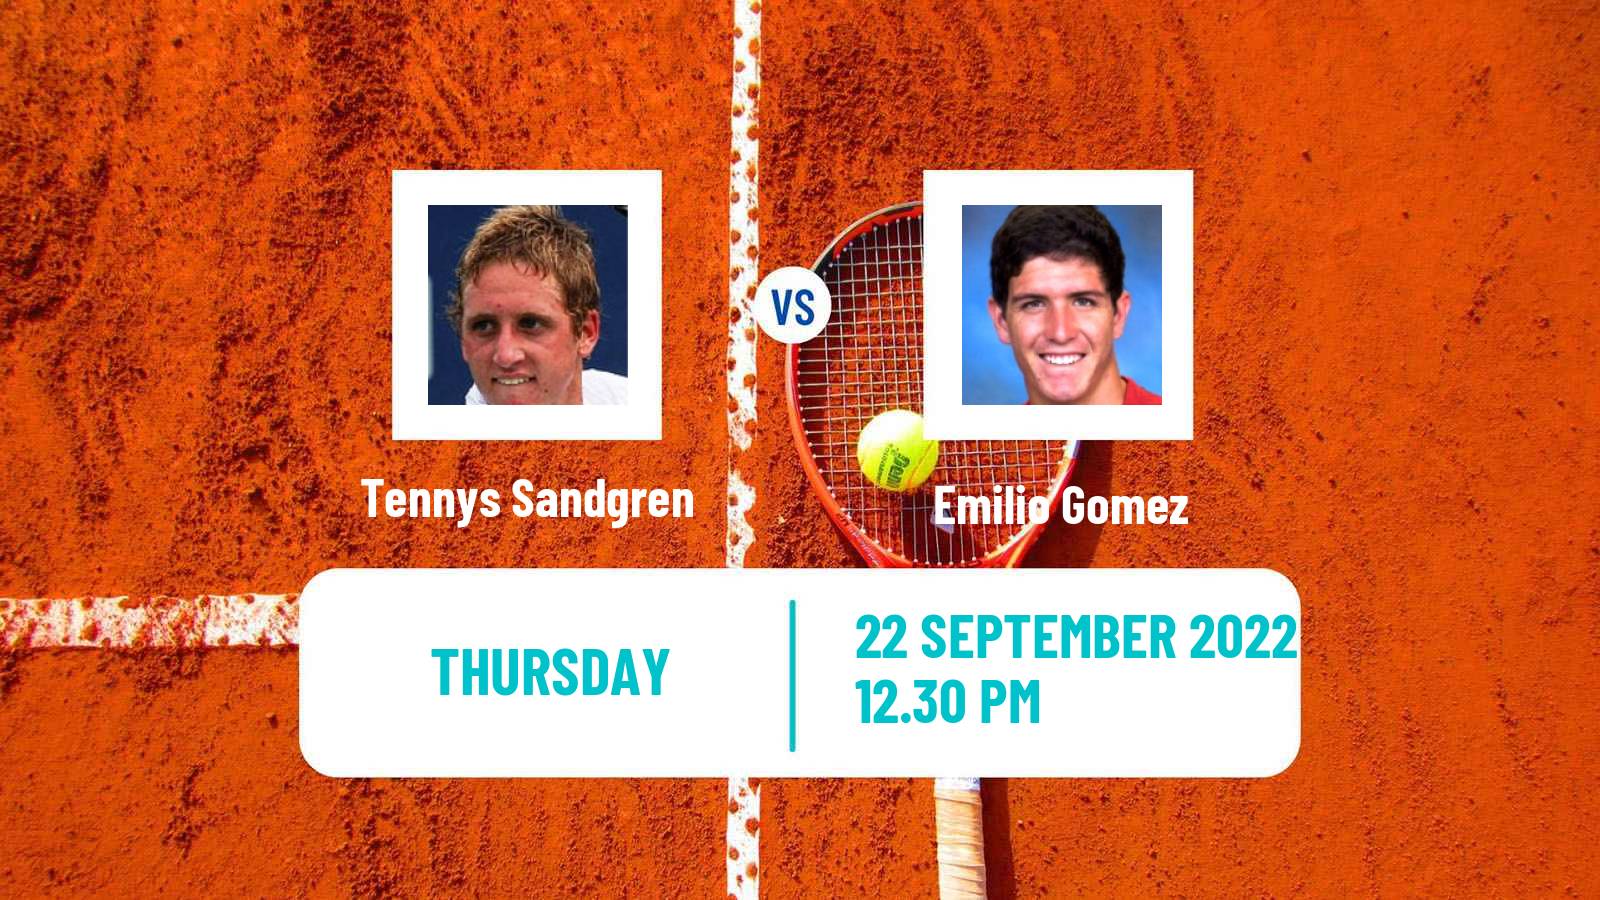 Tennis ATP Challenger Tennys Sandgren - Emilio Gomez